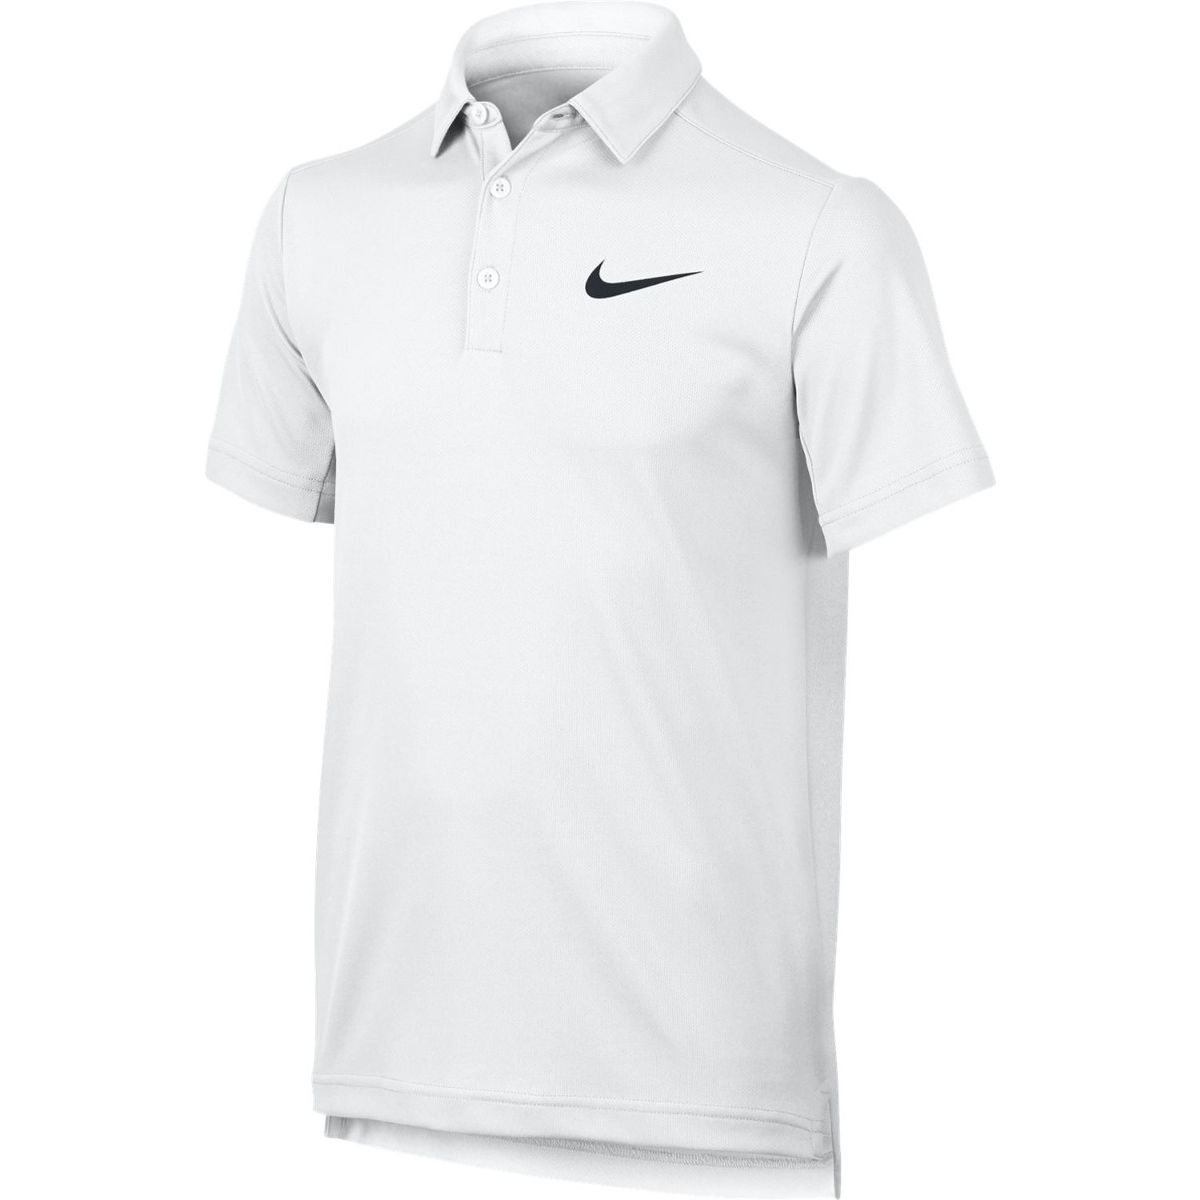 Nike Dry Tennis Boys' Polo 844311-100